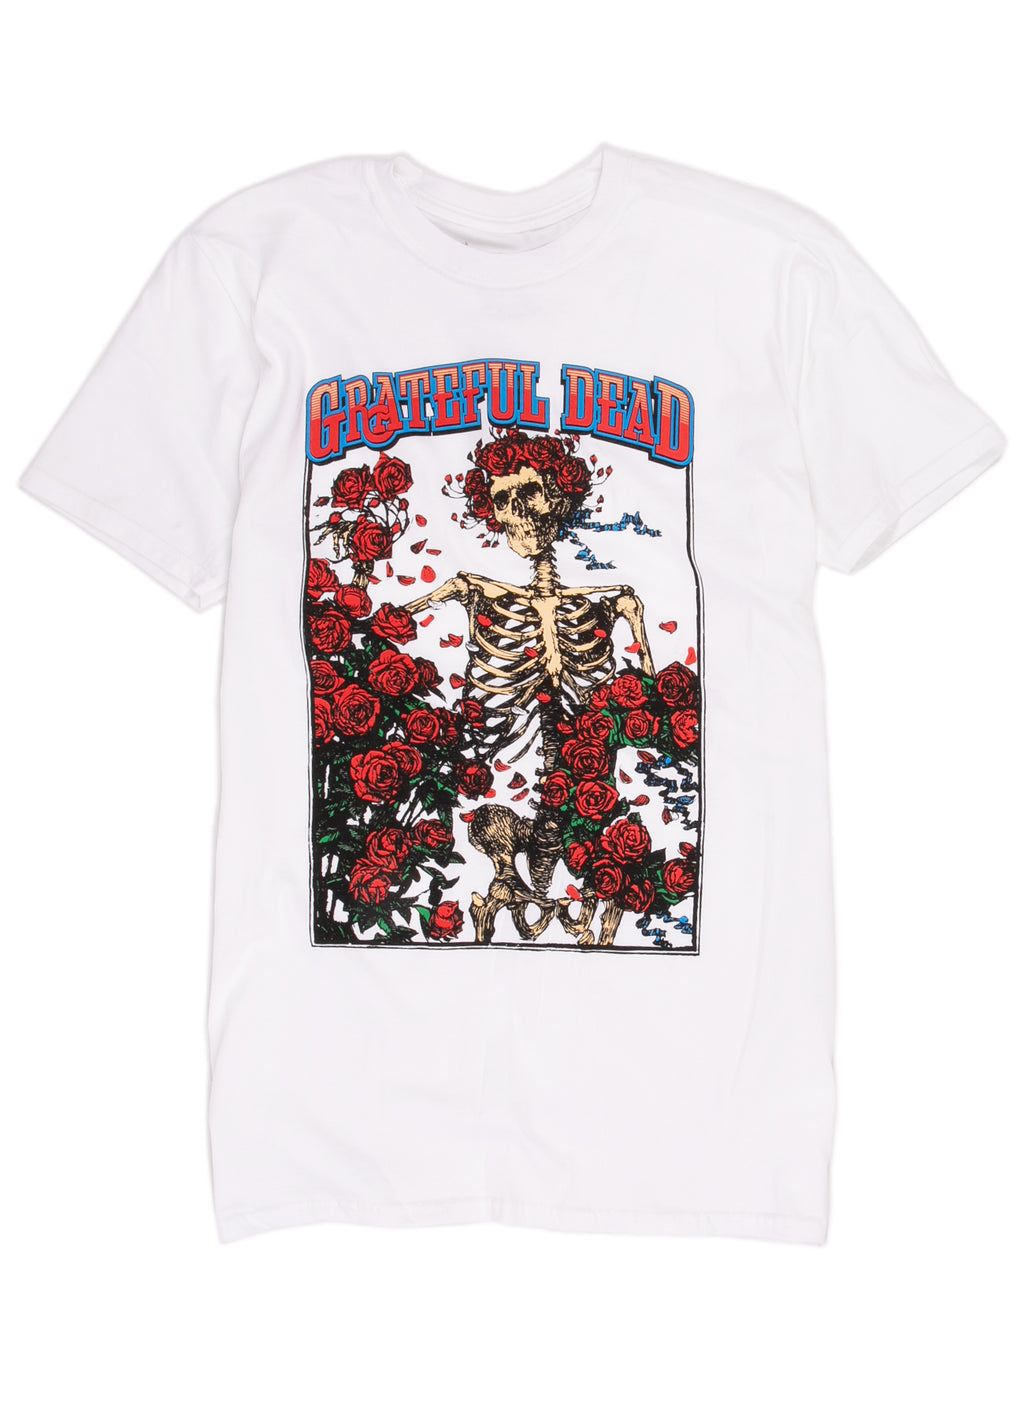 Grateful Dead skeleton t-shirt in white.